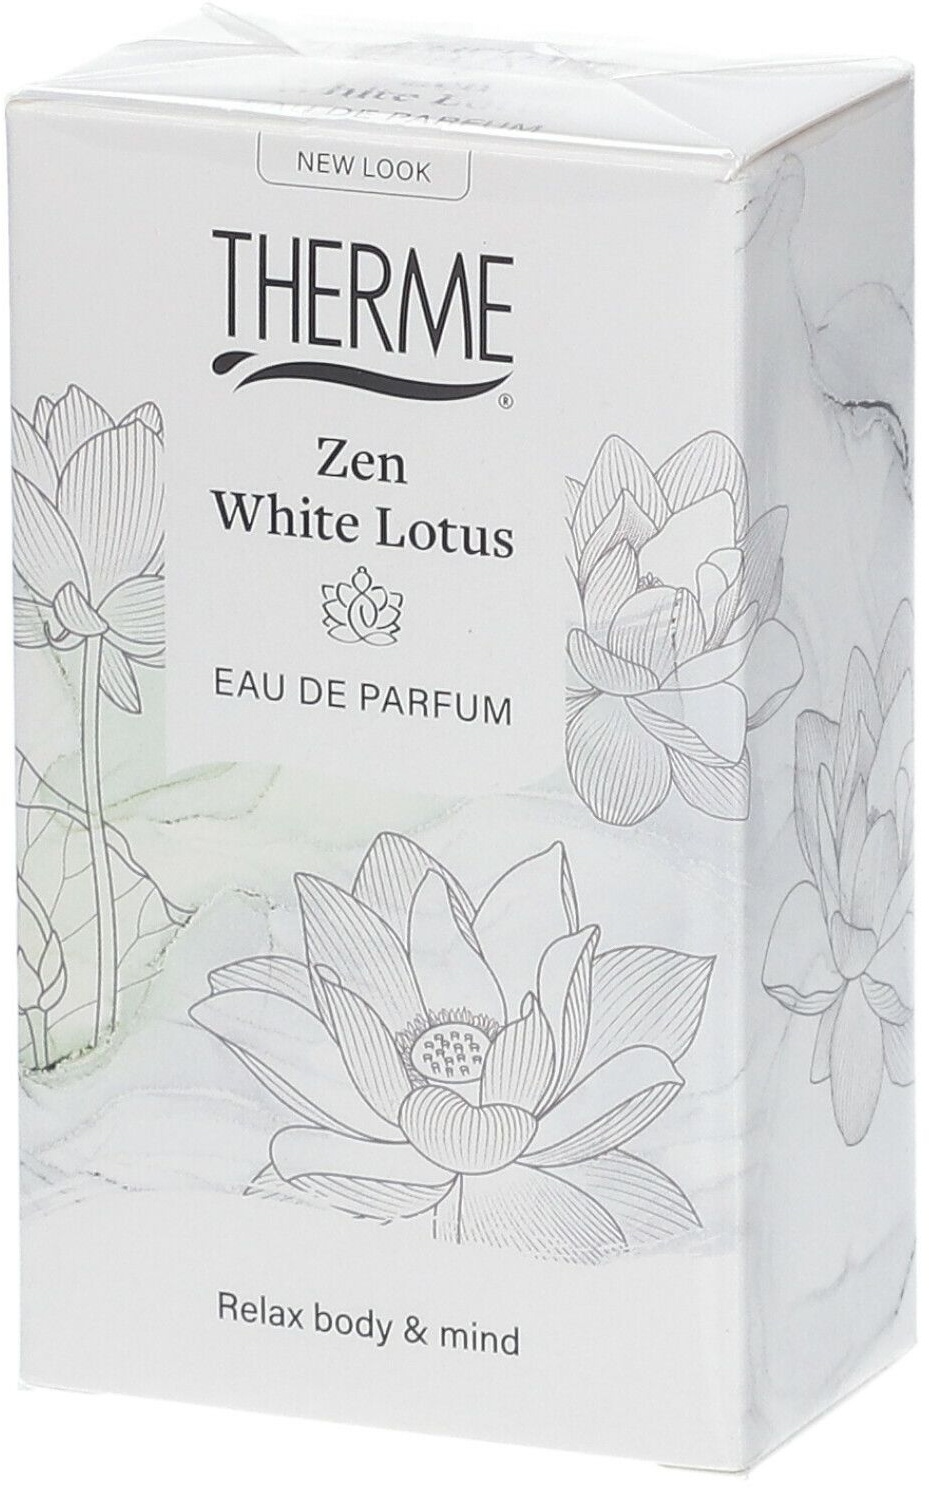 Therme Zen White Lotus Eau de Parfum